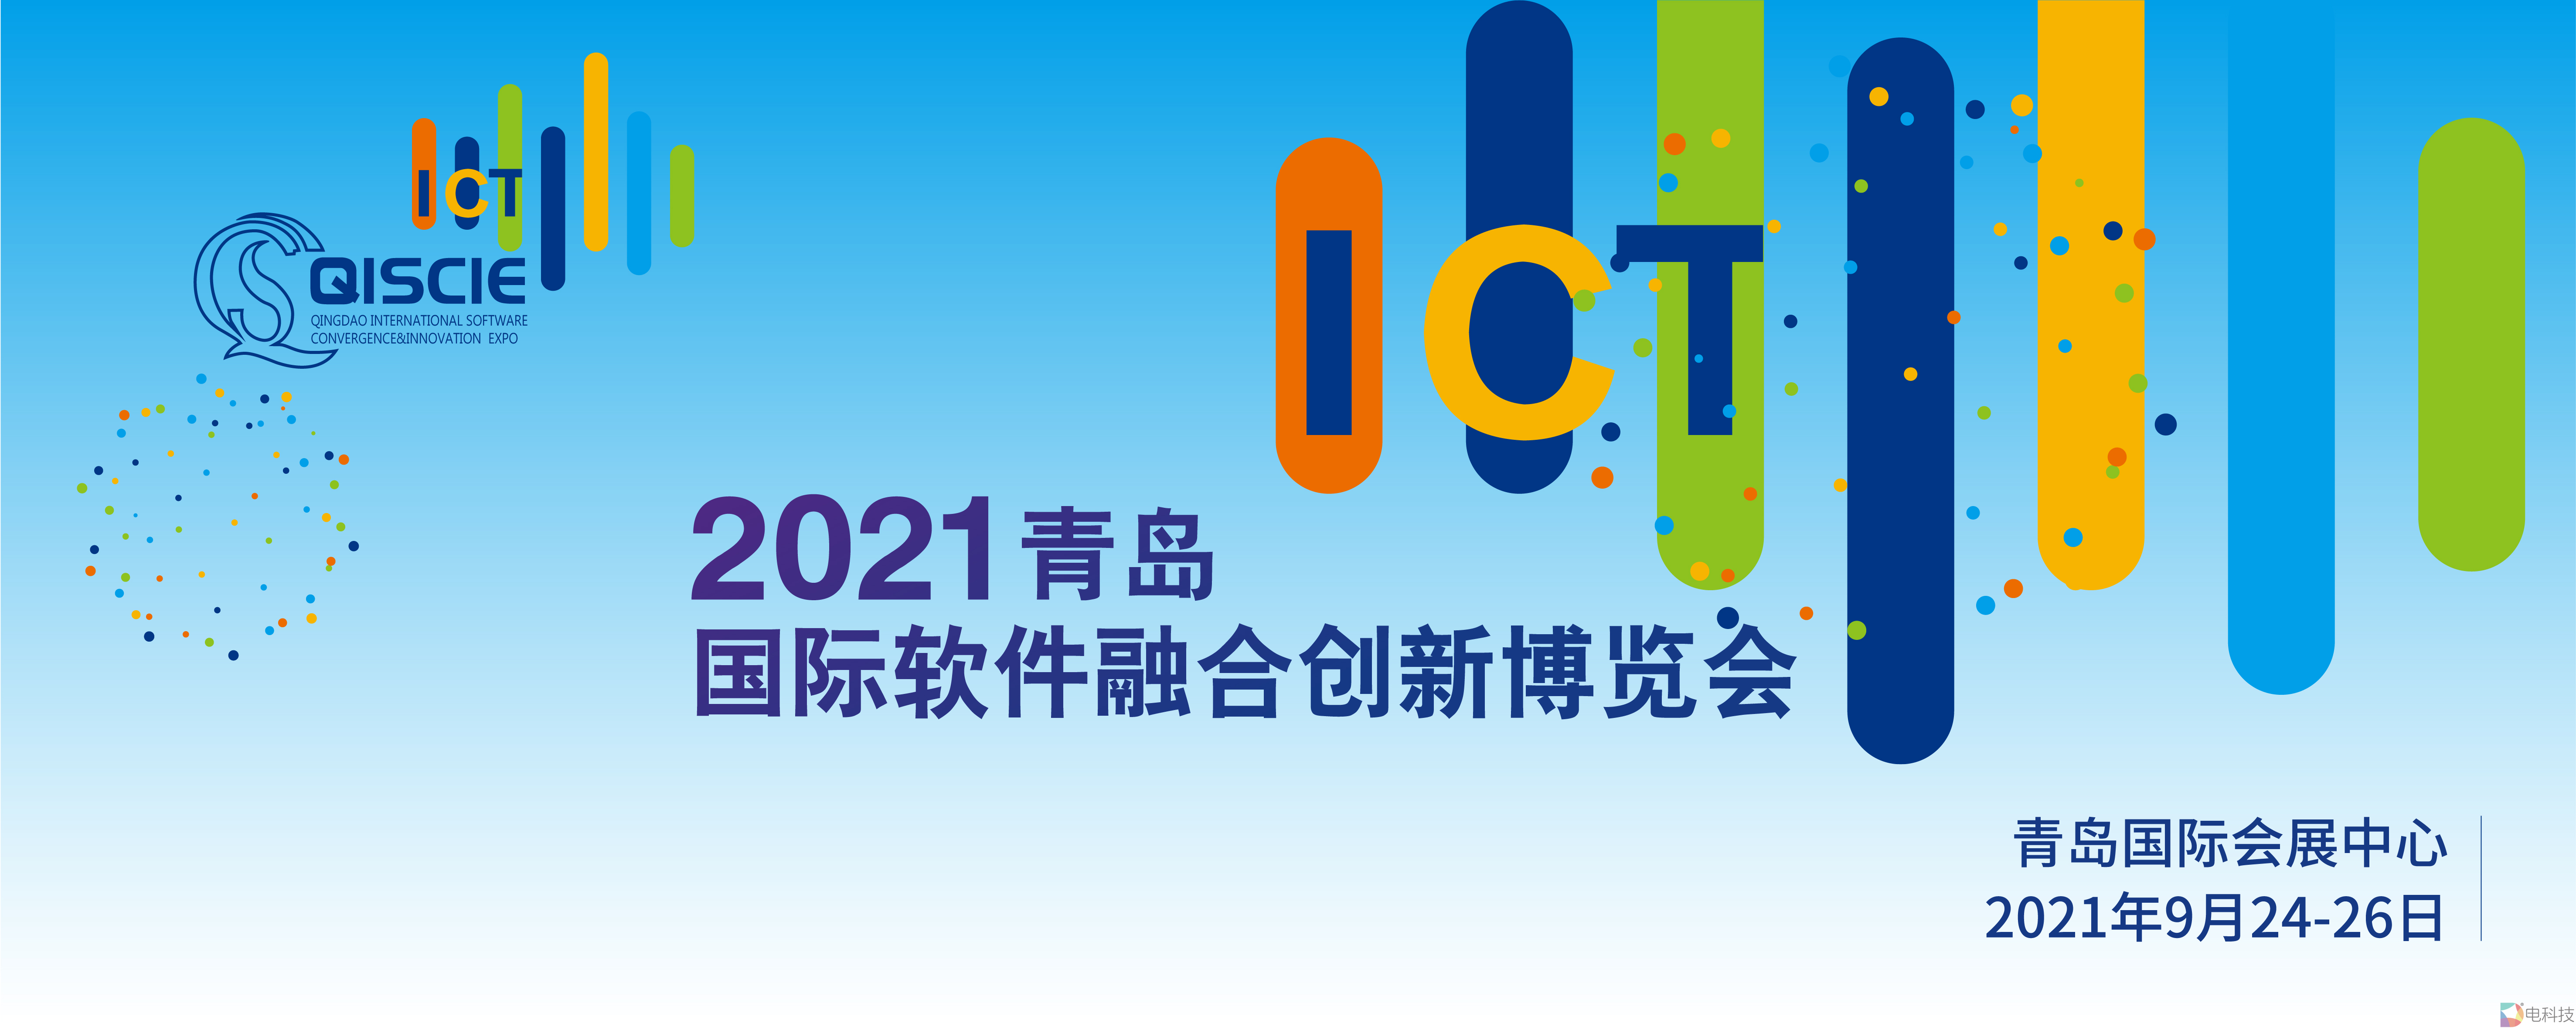 2021青岛国际软件融合创新博览会全新亮相 推动建设中国软件特色名城